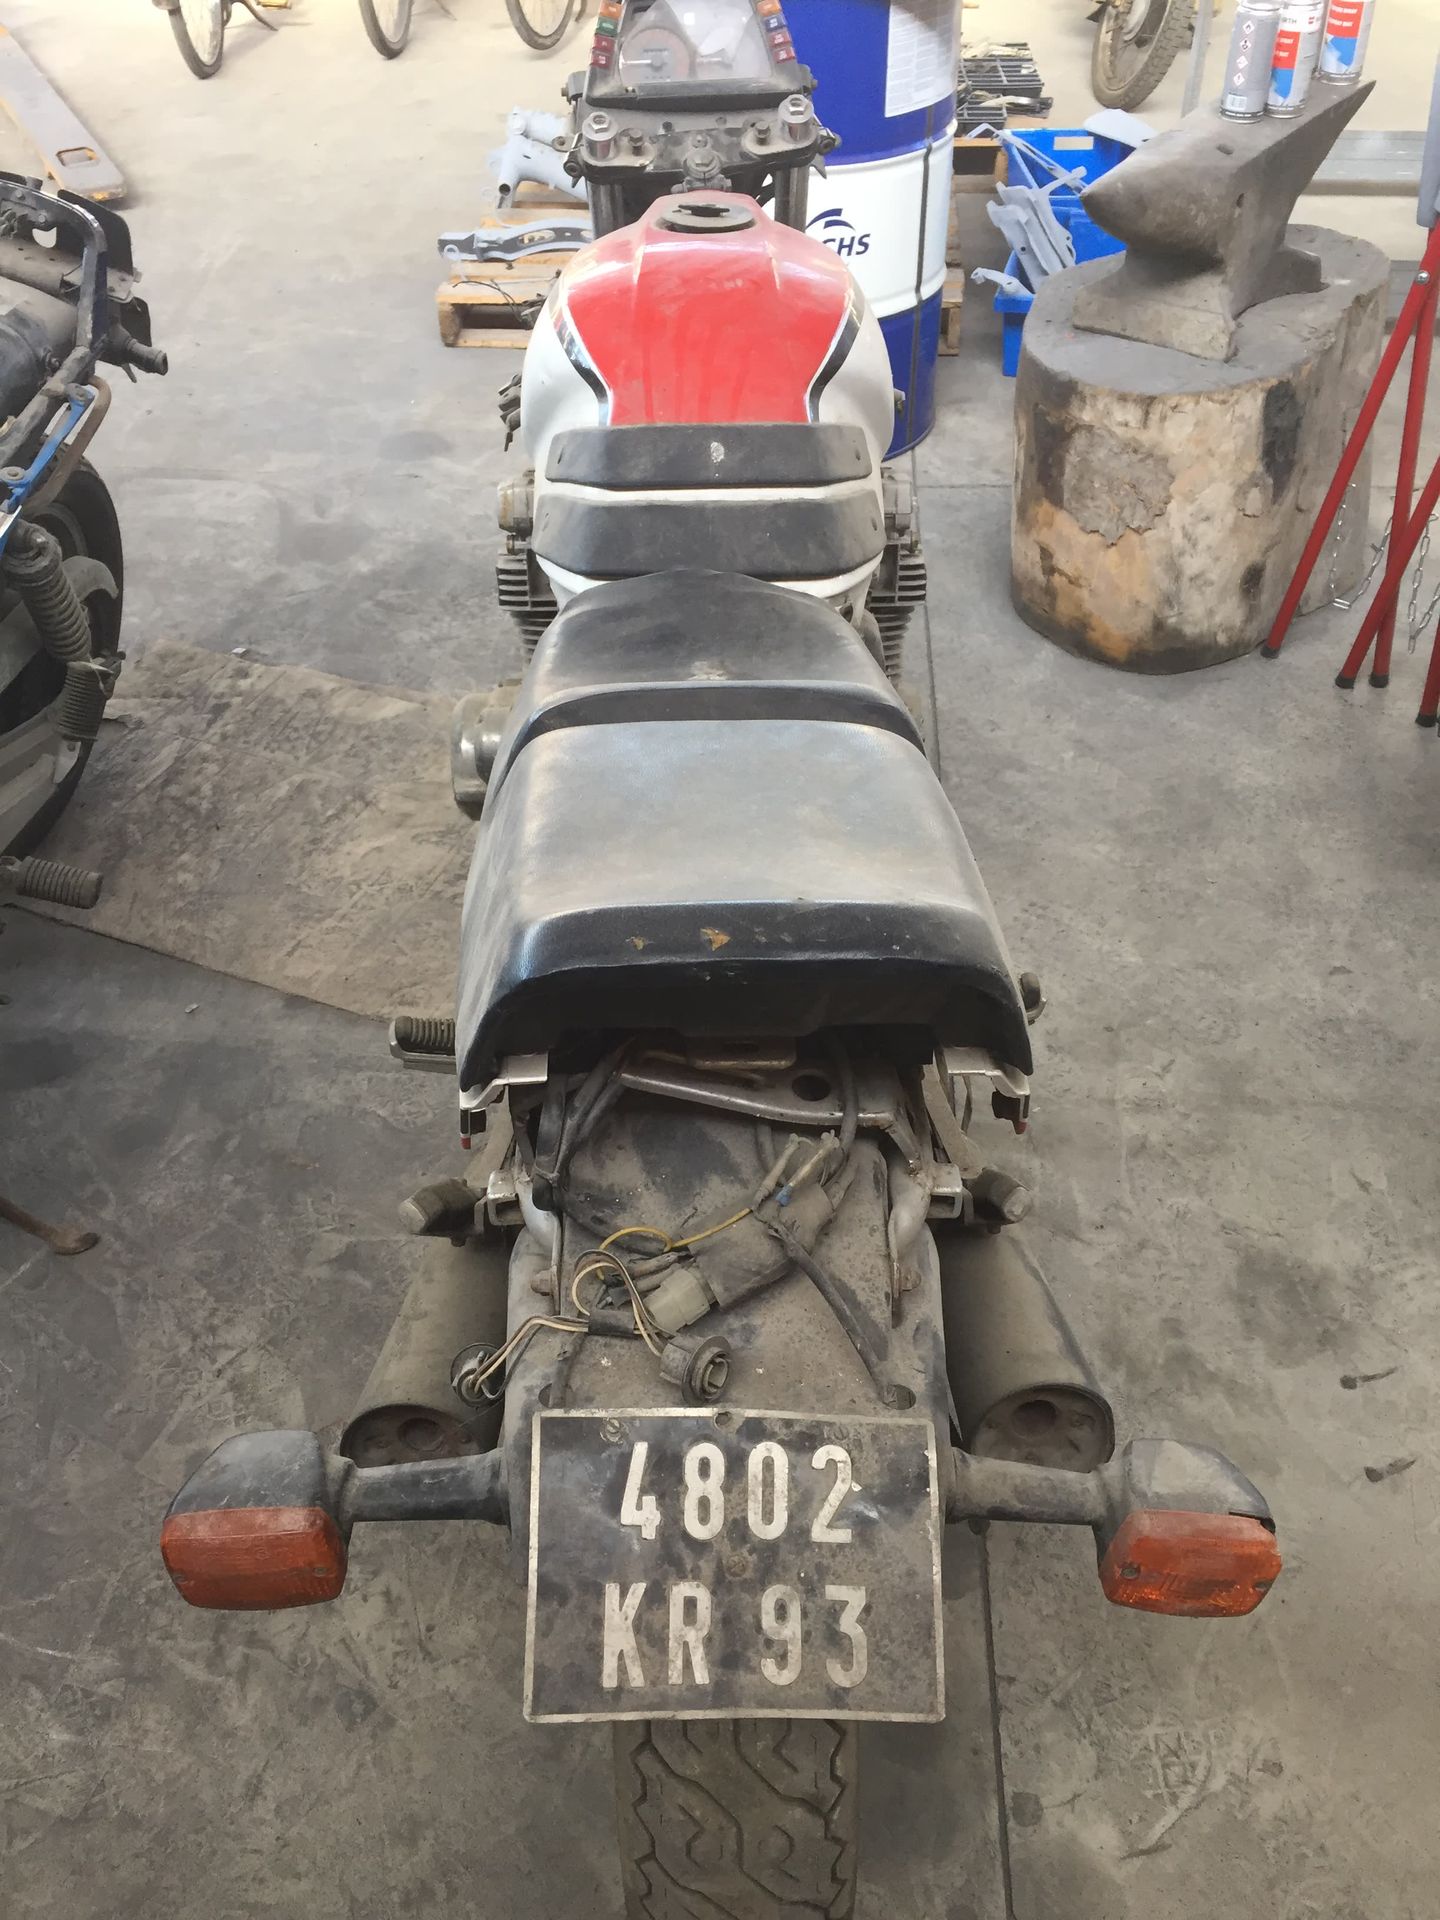 2 motos Suzuki GSX 1100 Uno n. 524298 con numero di registrazione 9868 SY 67

Un&hellip;